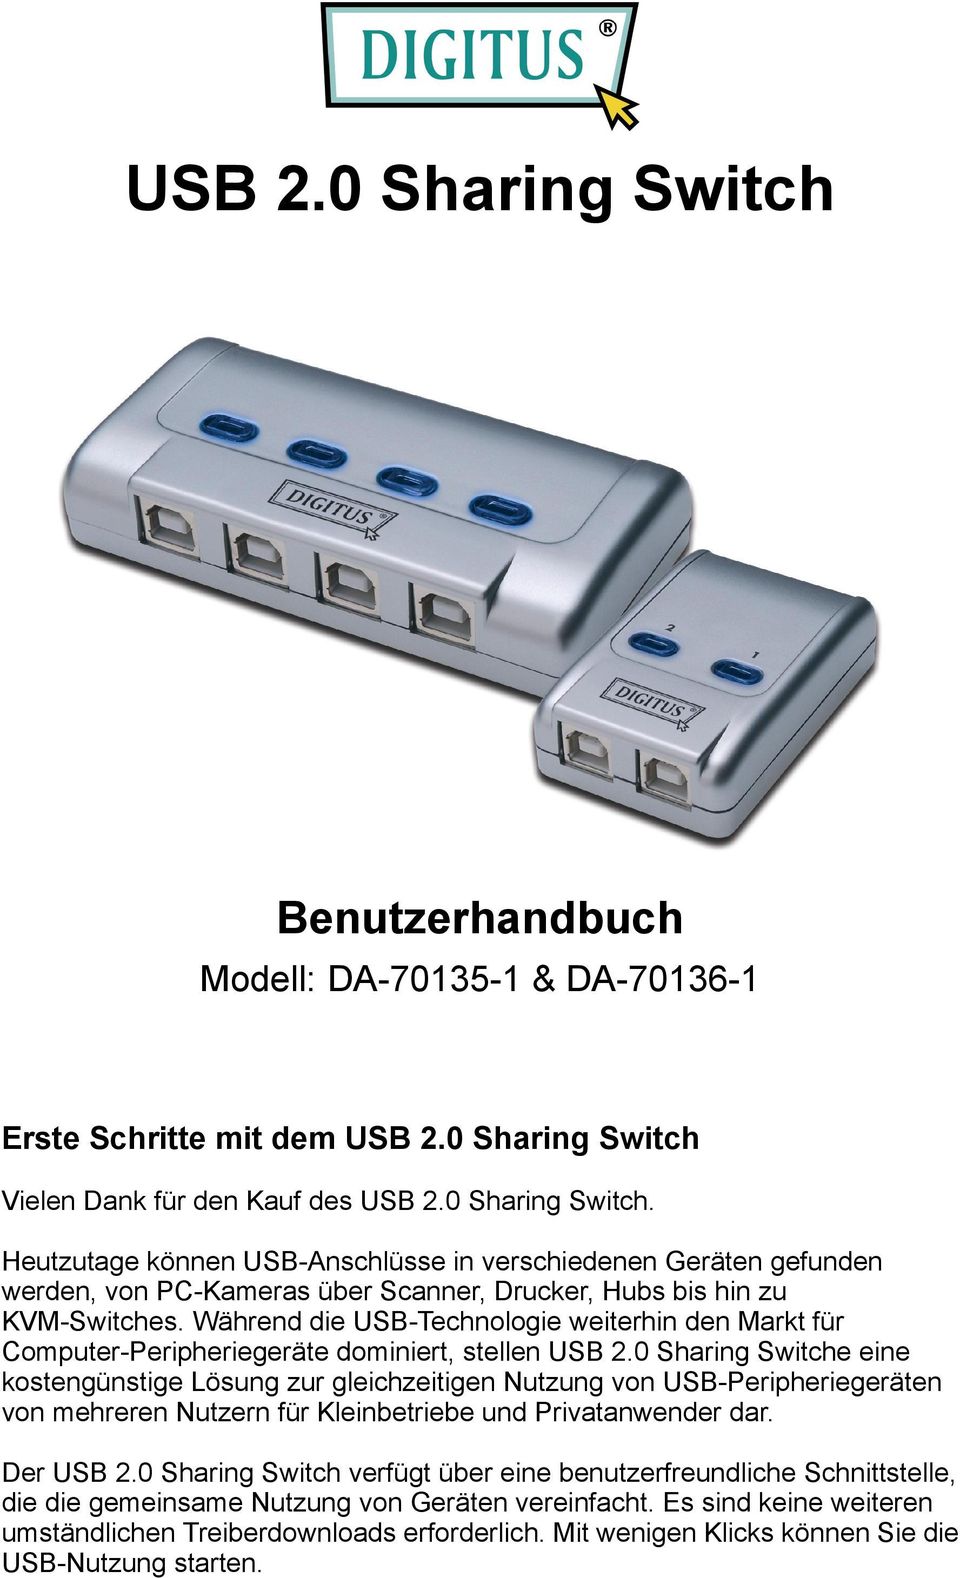 0 Sharing Switche eine kostengünstige Lösung zur gleichzeitigen Nutzung von USB-Peripheriegeräten von mehreren Nutzern für Kleinbetriebe und Privatanwender dar. Der USB 2.